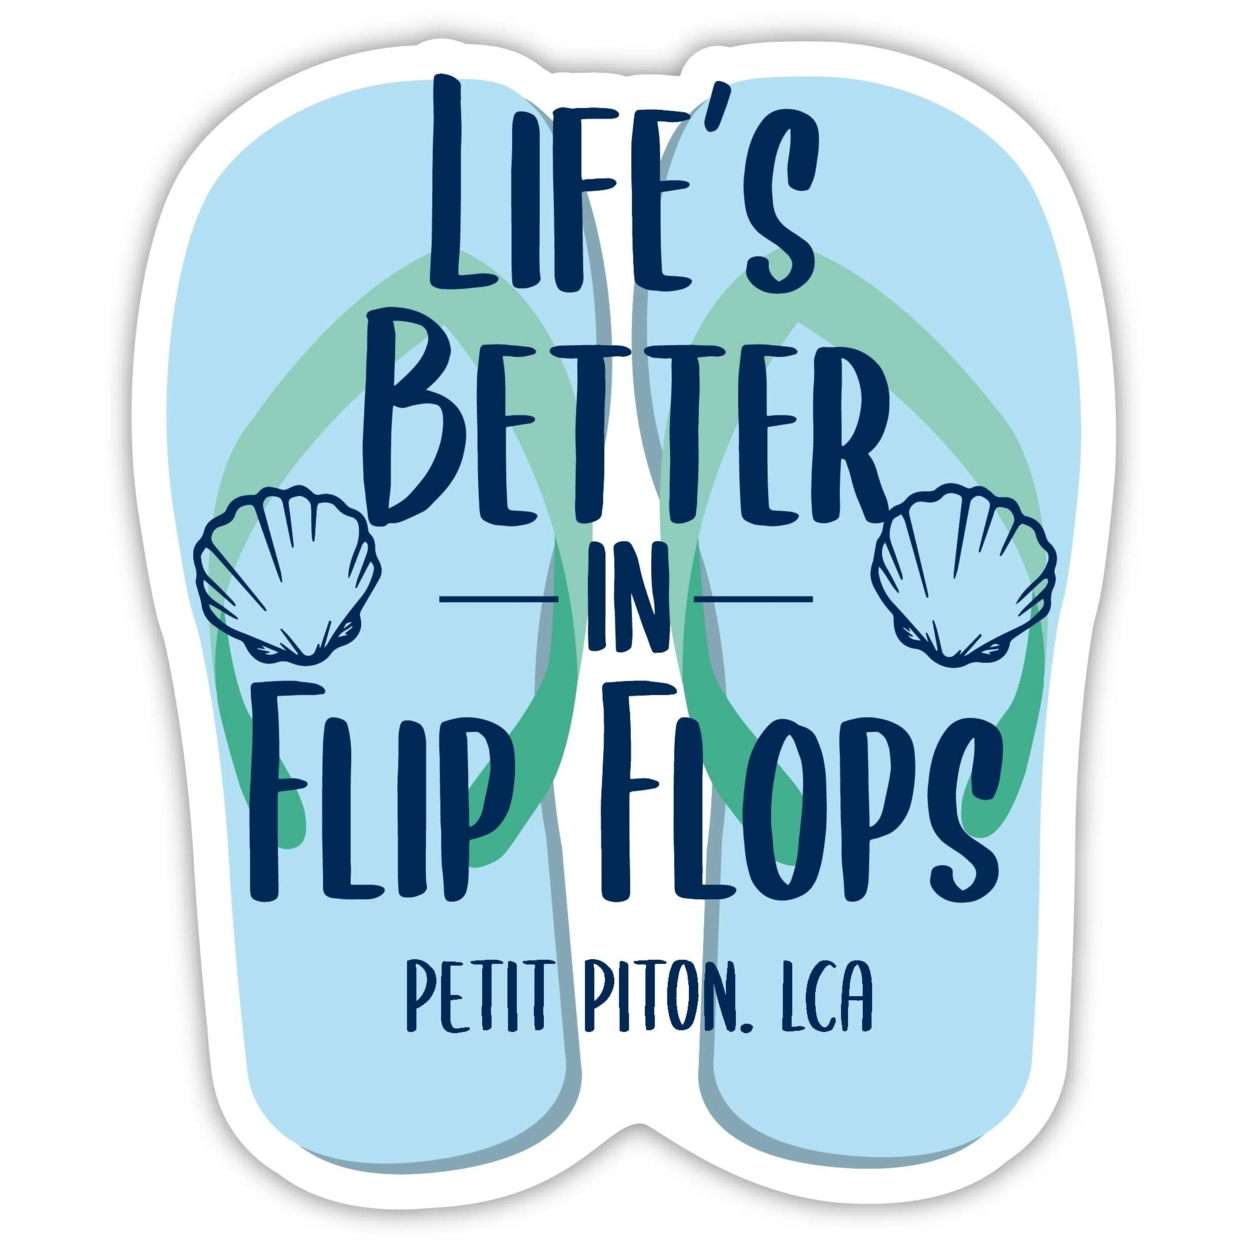 Petit Piton St. Lucia Souvenir 4 Inch Vinyl Decal Sticker Flip Flop Design